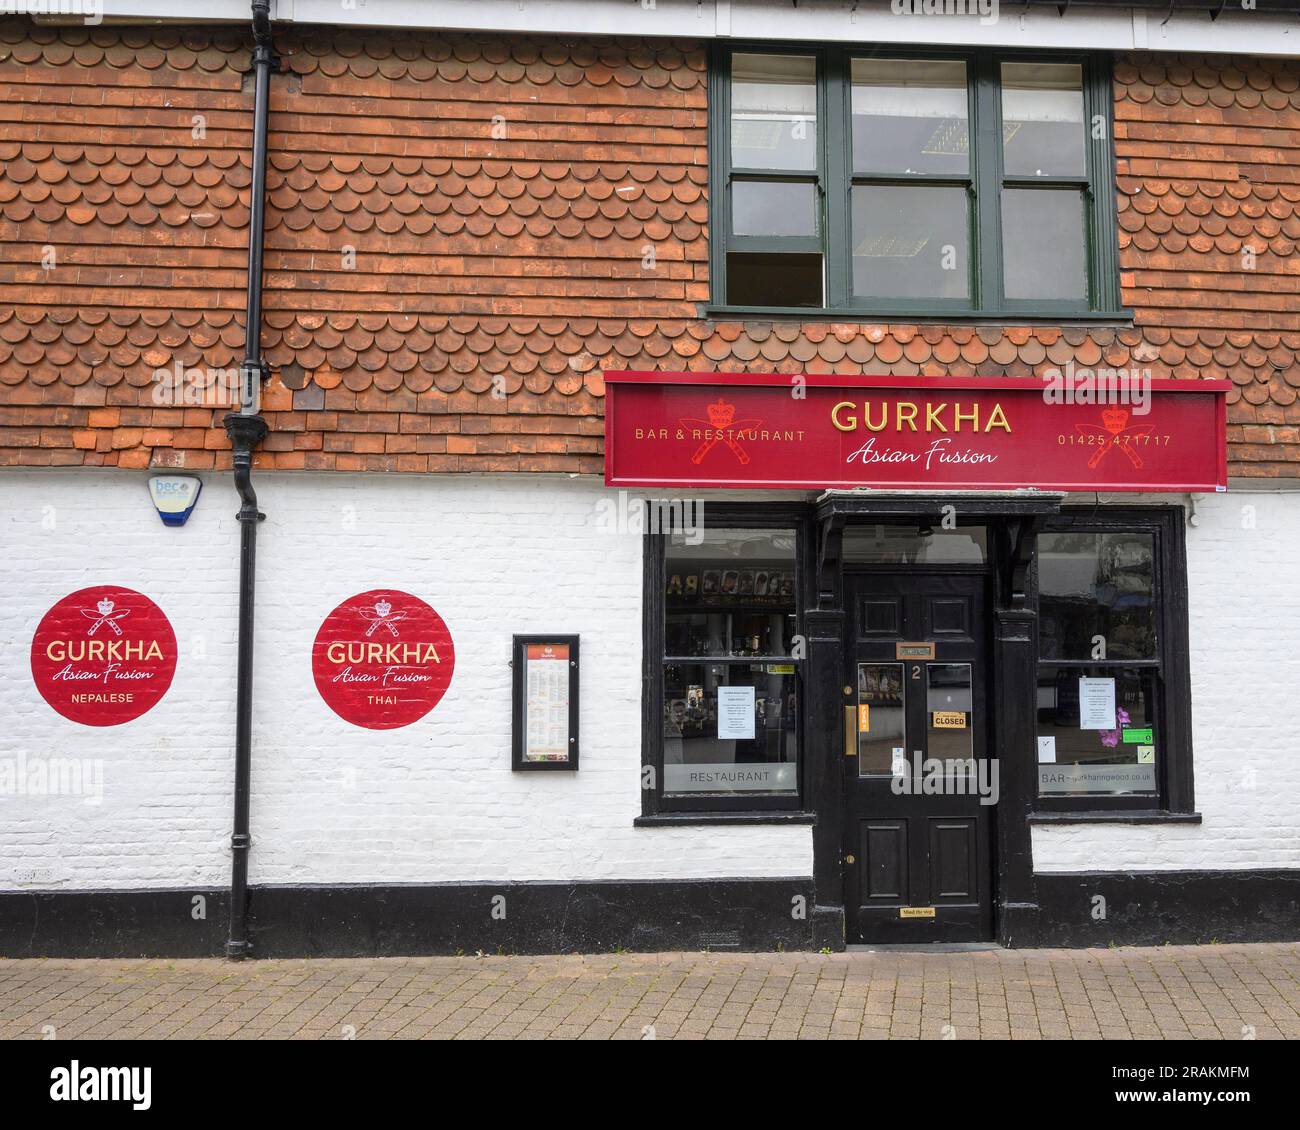 Restaurant gastronomique asiatique Gurkha, Ringwood, Hampshire, Royaume-Uni Banque D'Images